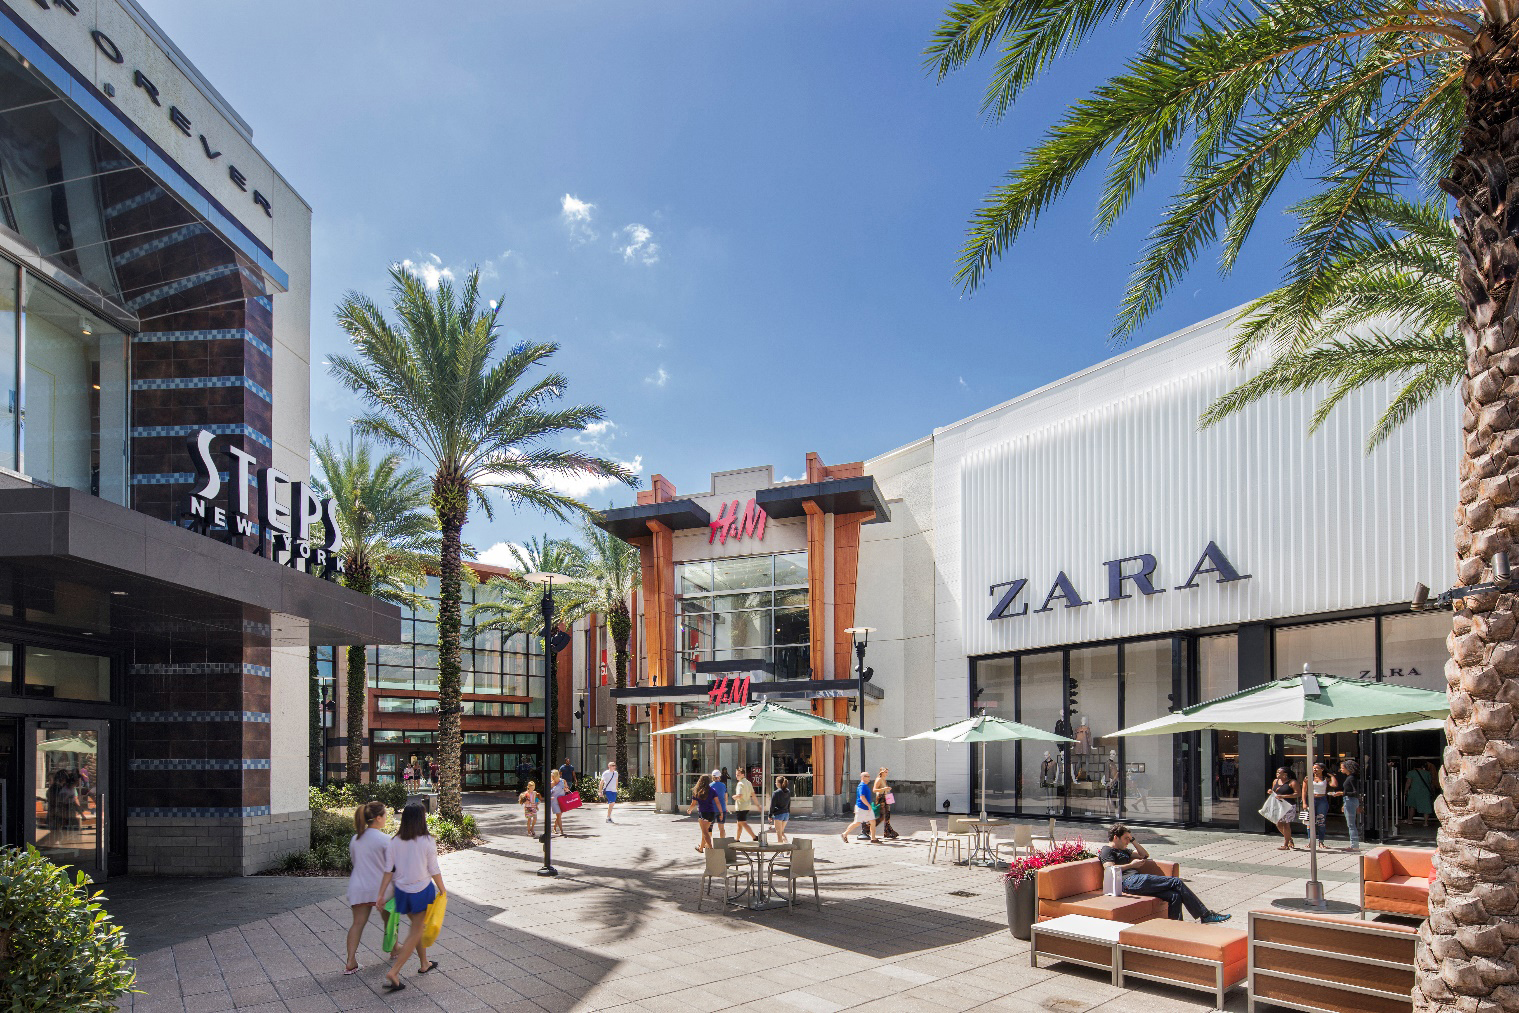 Orlando Outlets  Find Shopping Discounts on Designer Brands